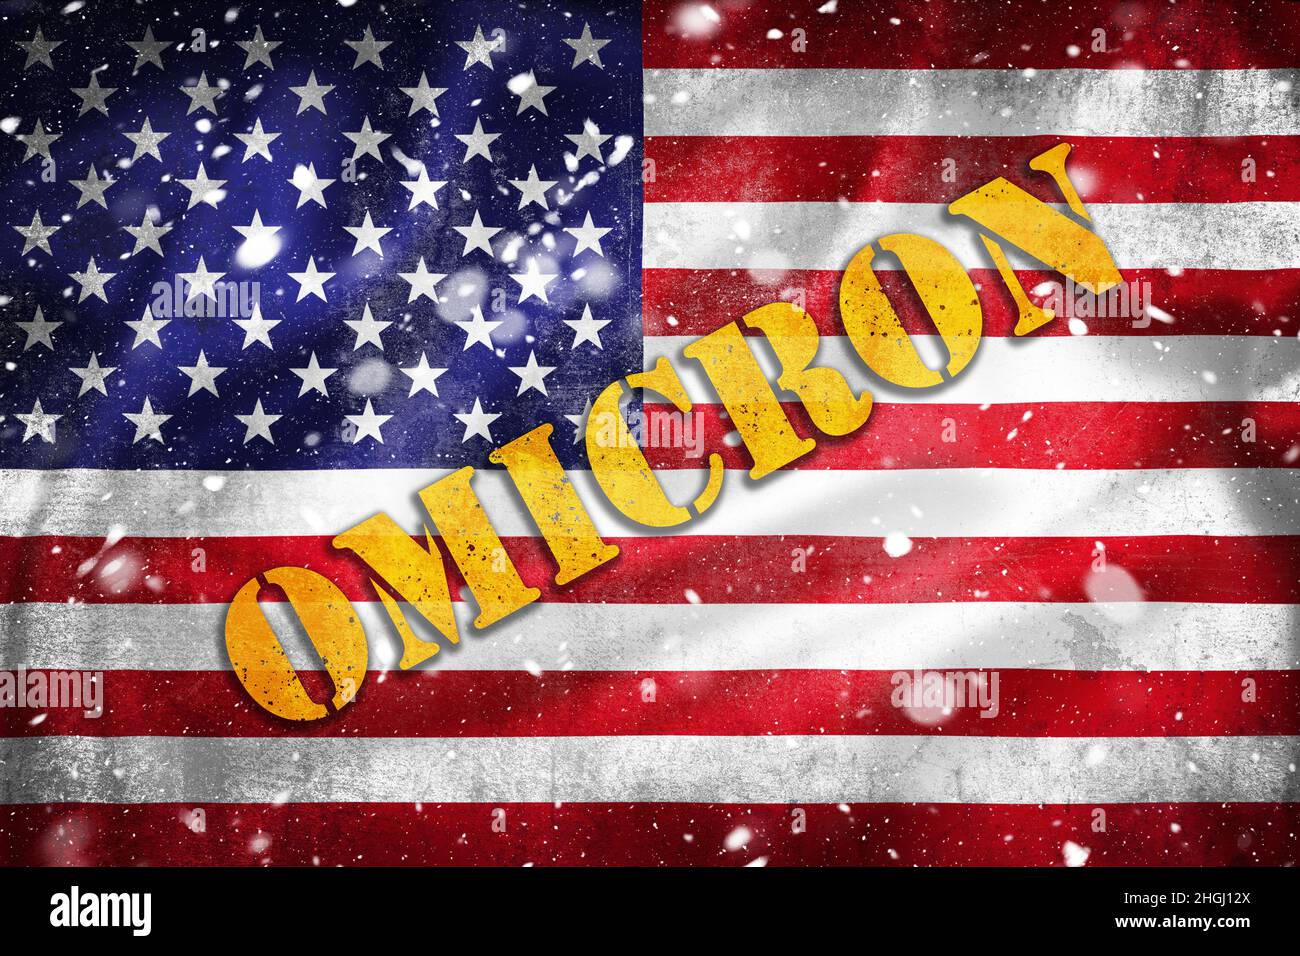 Etats-Unis d'Amérique drapeau grunge avec texte Omicron et surmatelas de neige.Illustration de la pandémie Covid-19 aux États-Unis. Banque D'Images